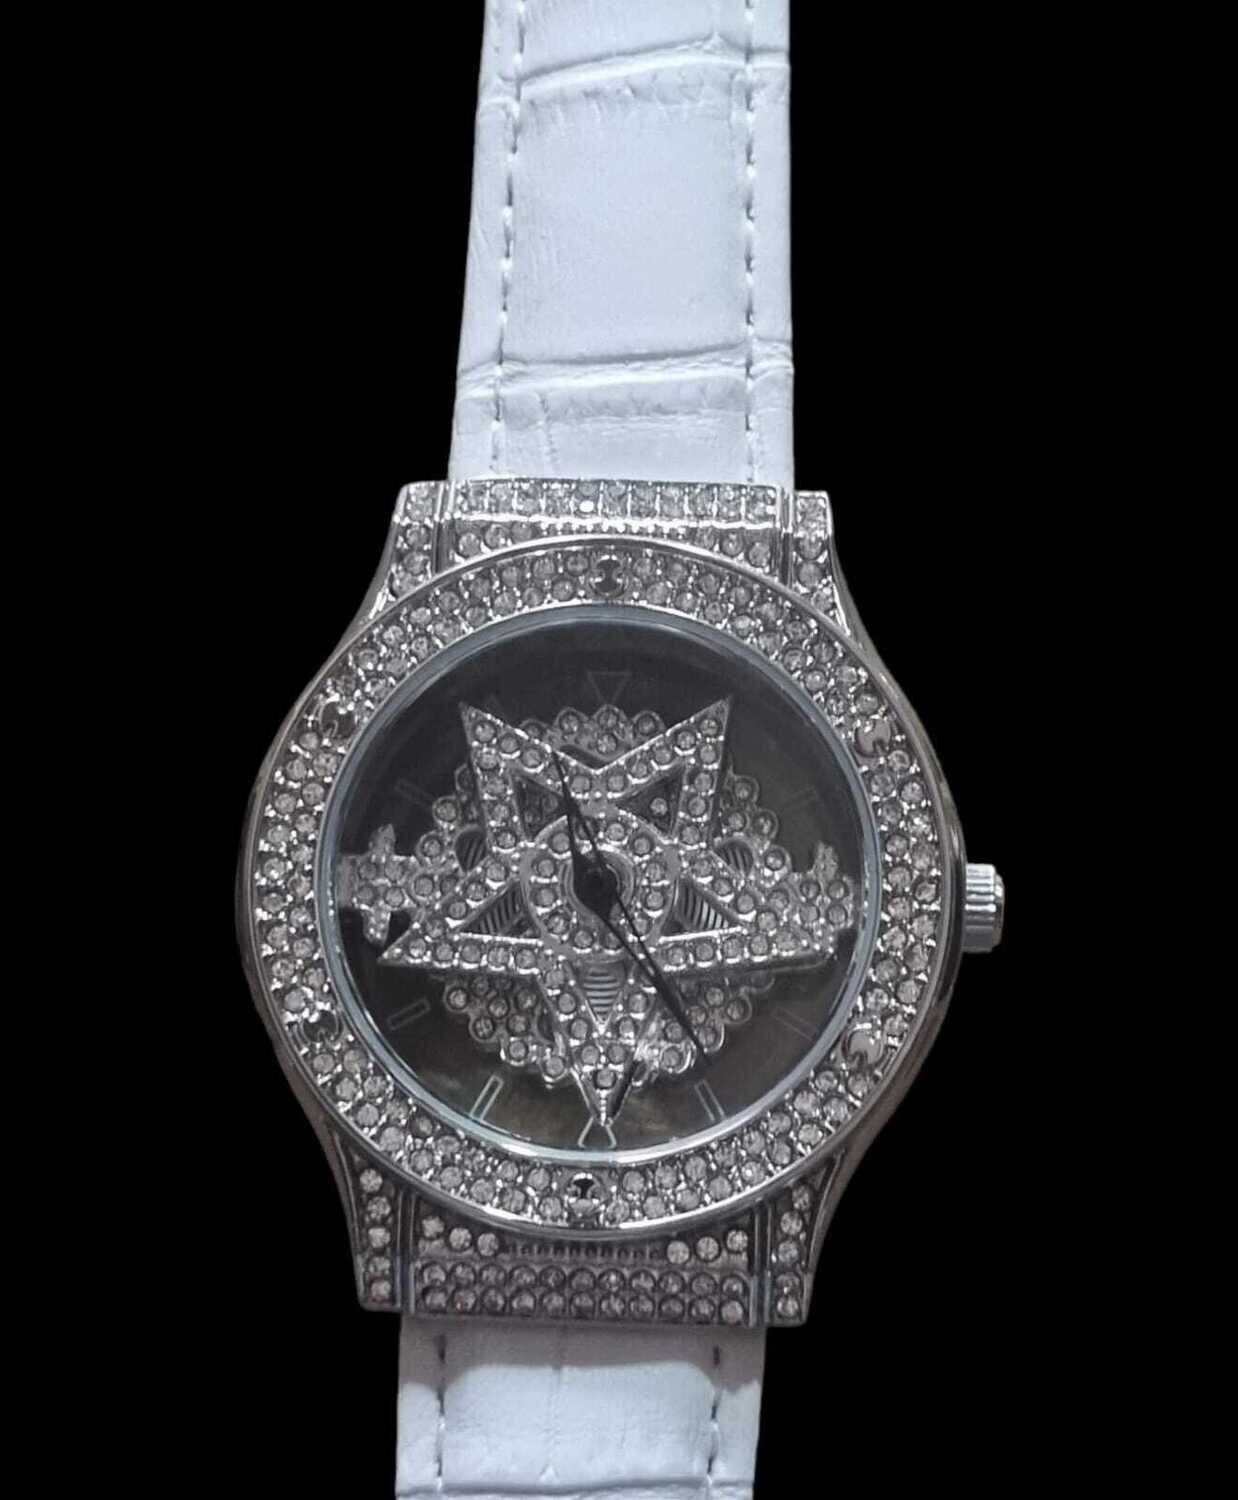 Armbanduhr Damen mit beweglichem Pentagramm
Silber